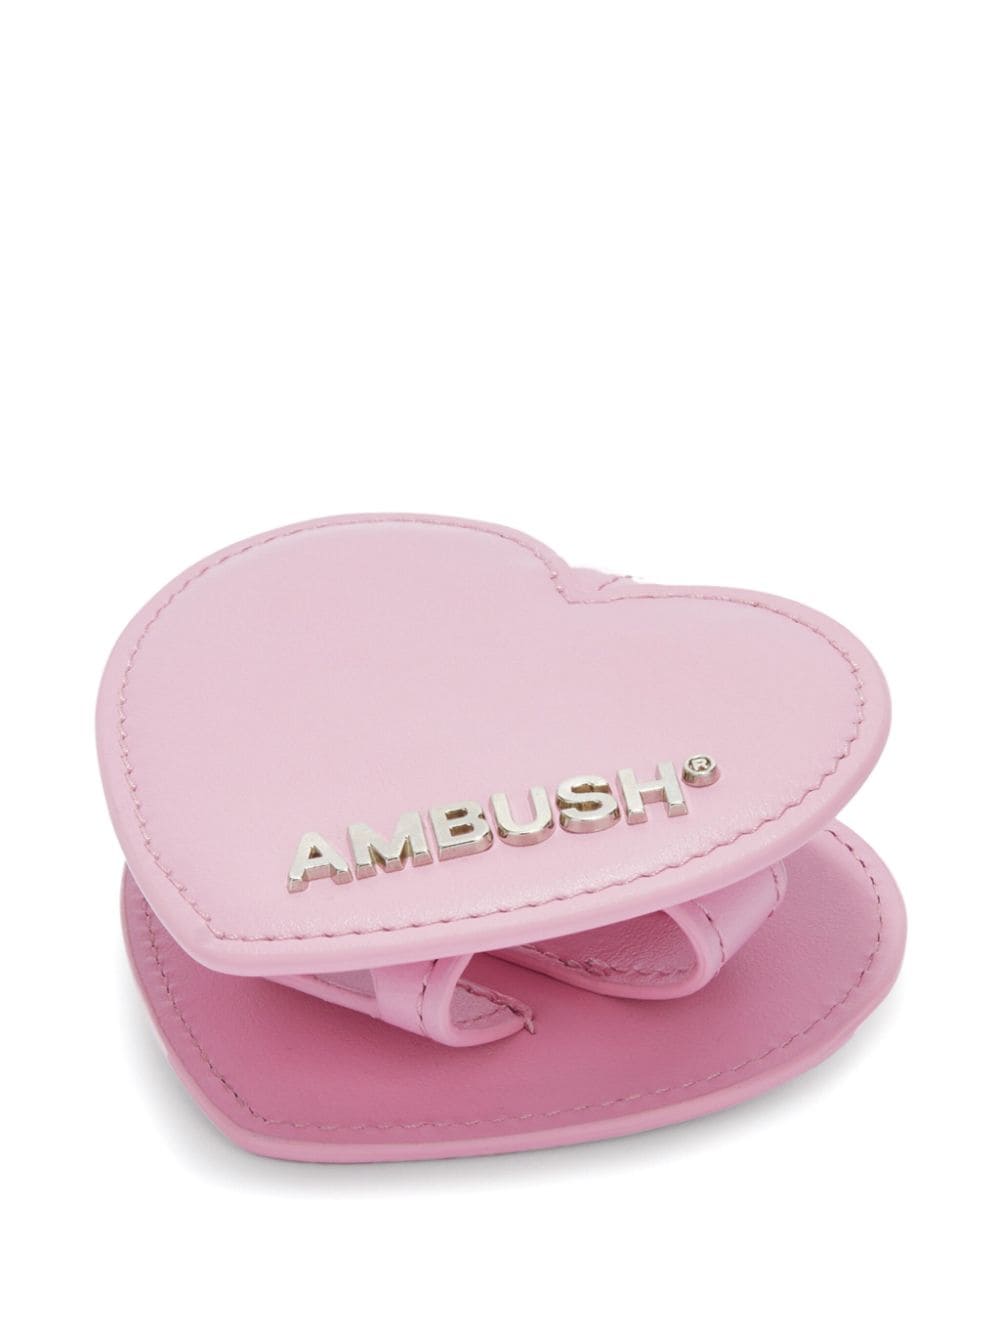 AMBUSH Heart leren AirPods hoesje Roze